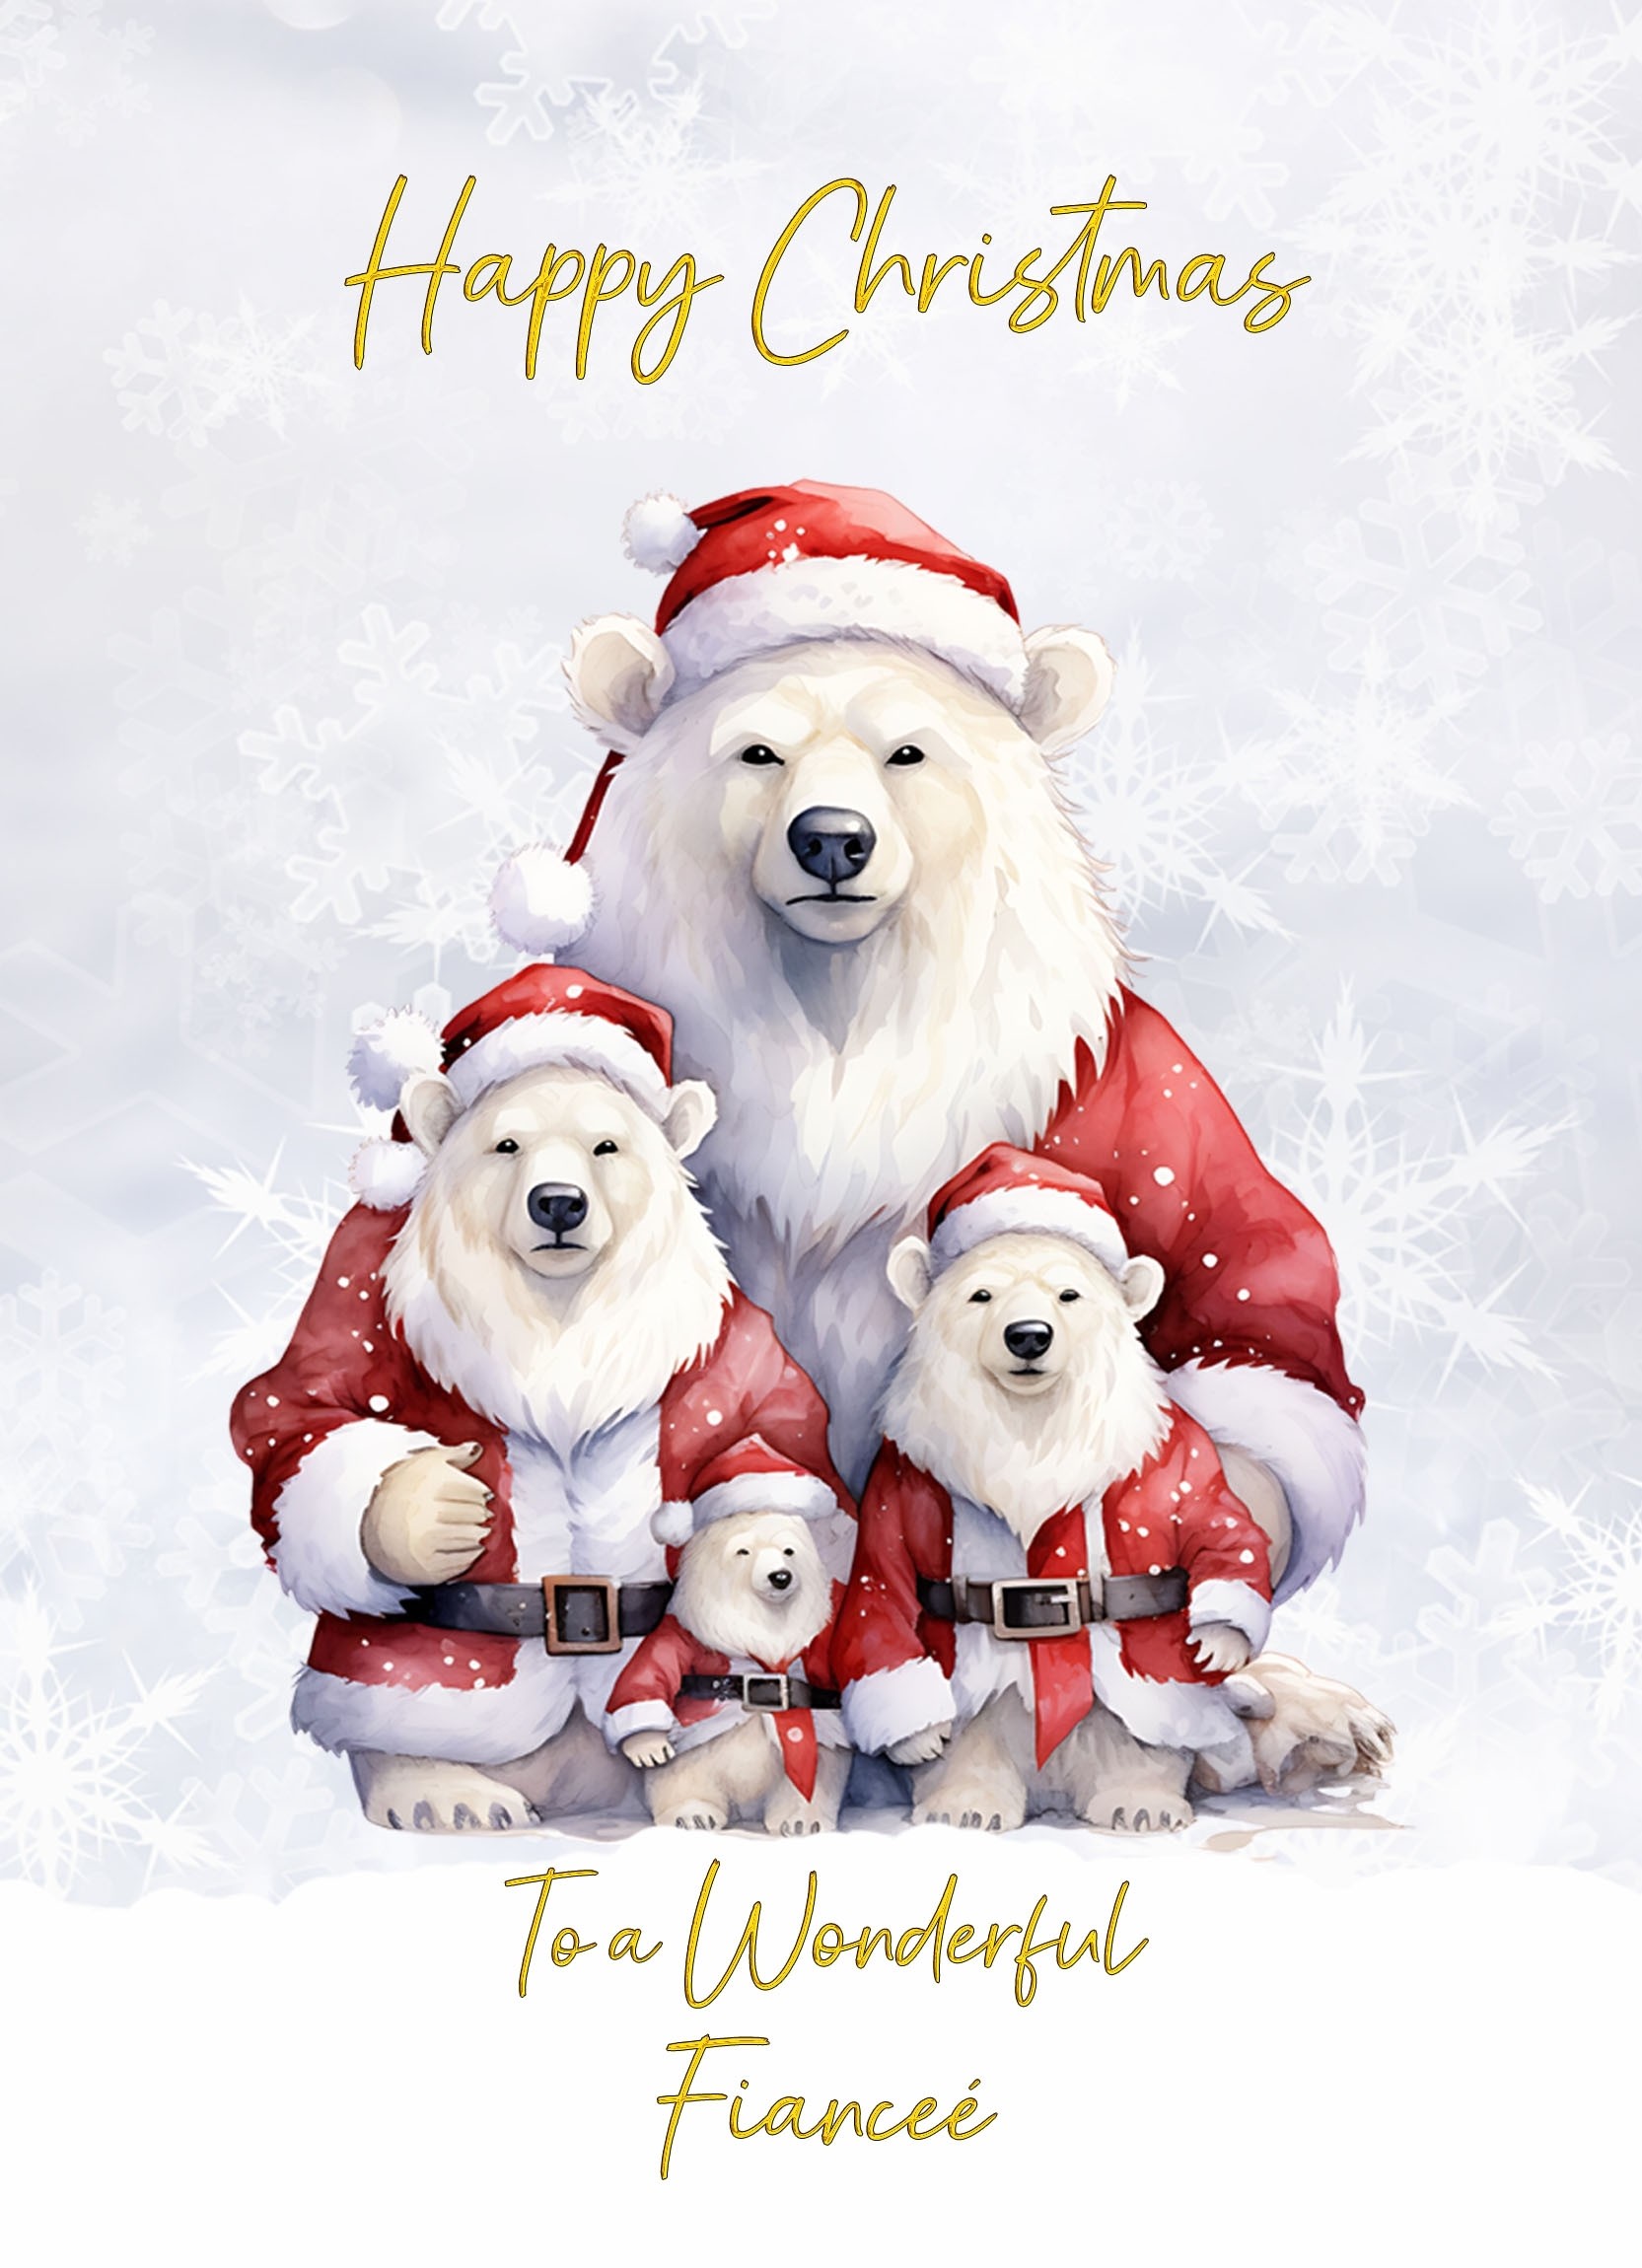 Christmas Card For Fiancee (Polar Bear Family Art)